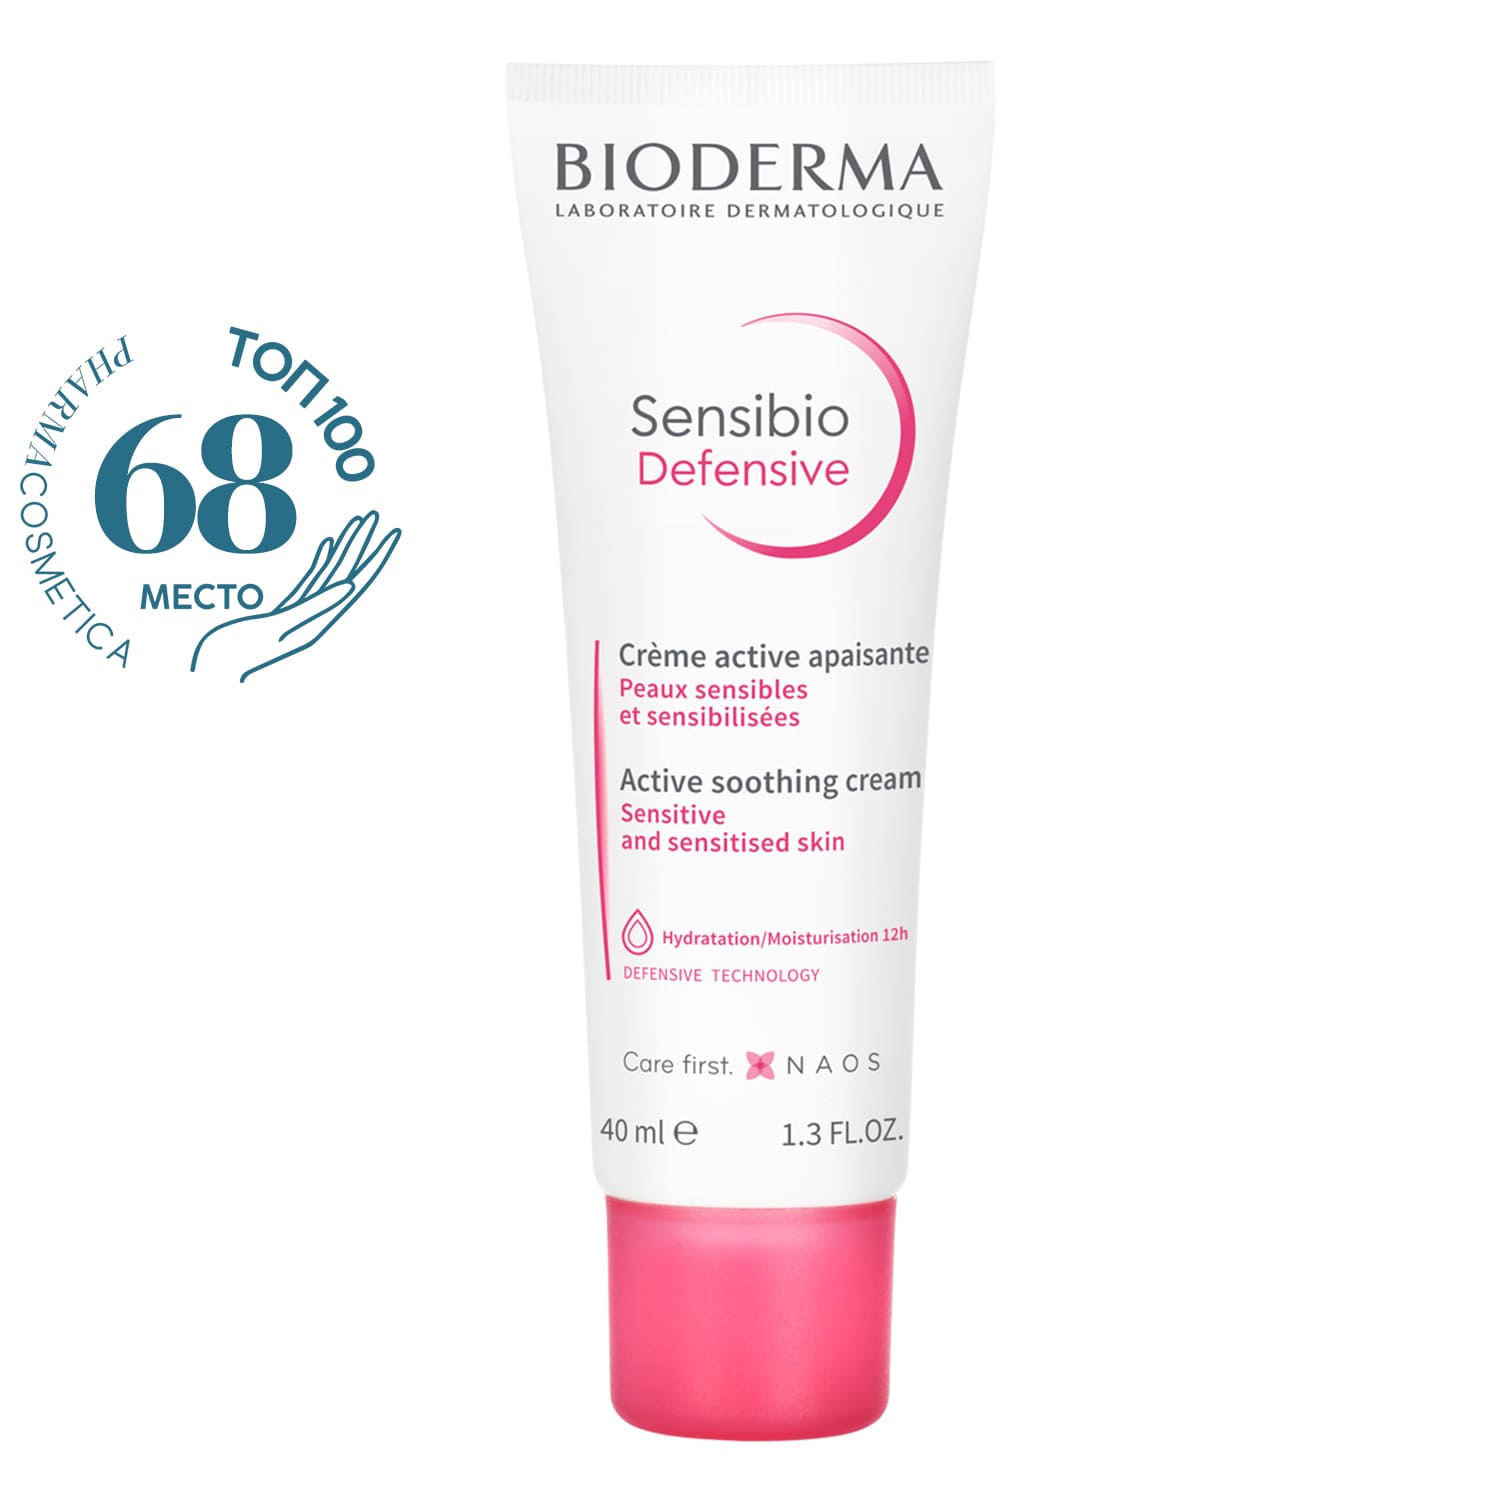 цена Bioderma Легкий крем для чувствительной кожи Defensive, 40 мл (Bioderma, Sensibio)